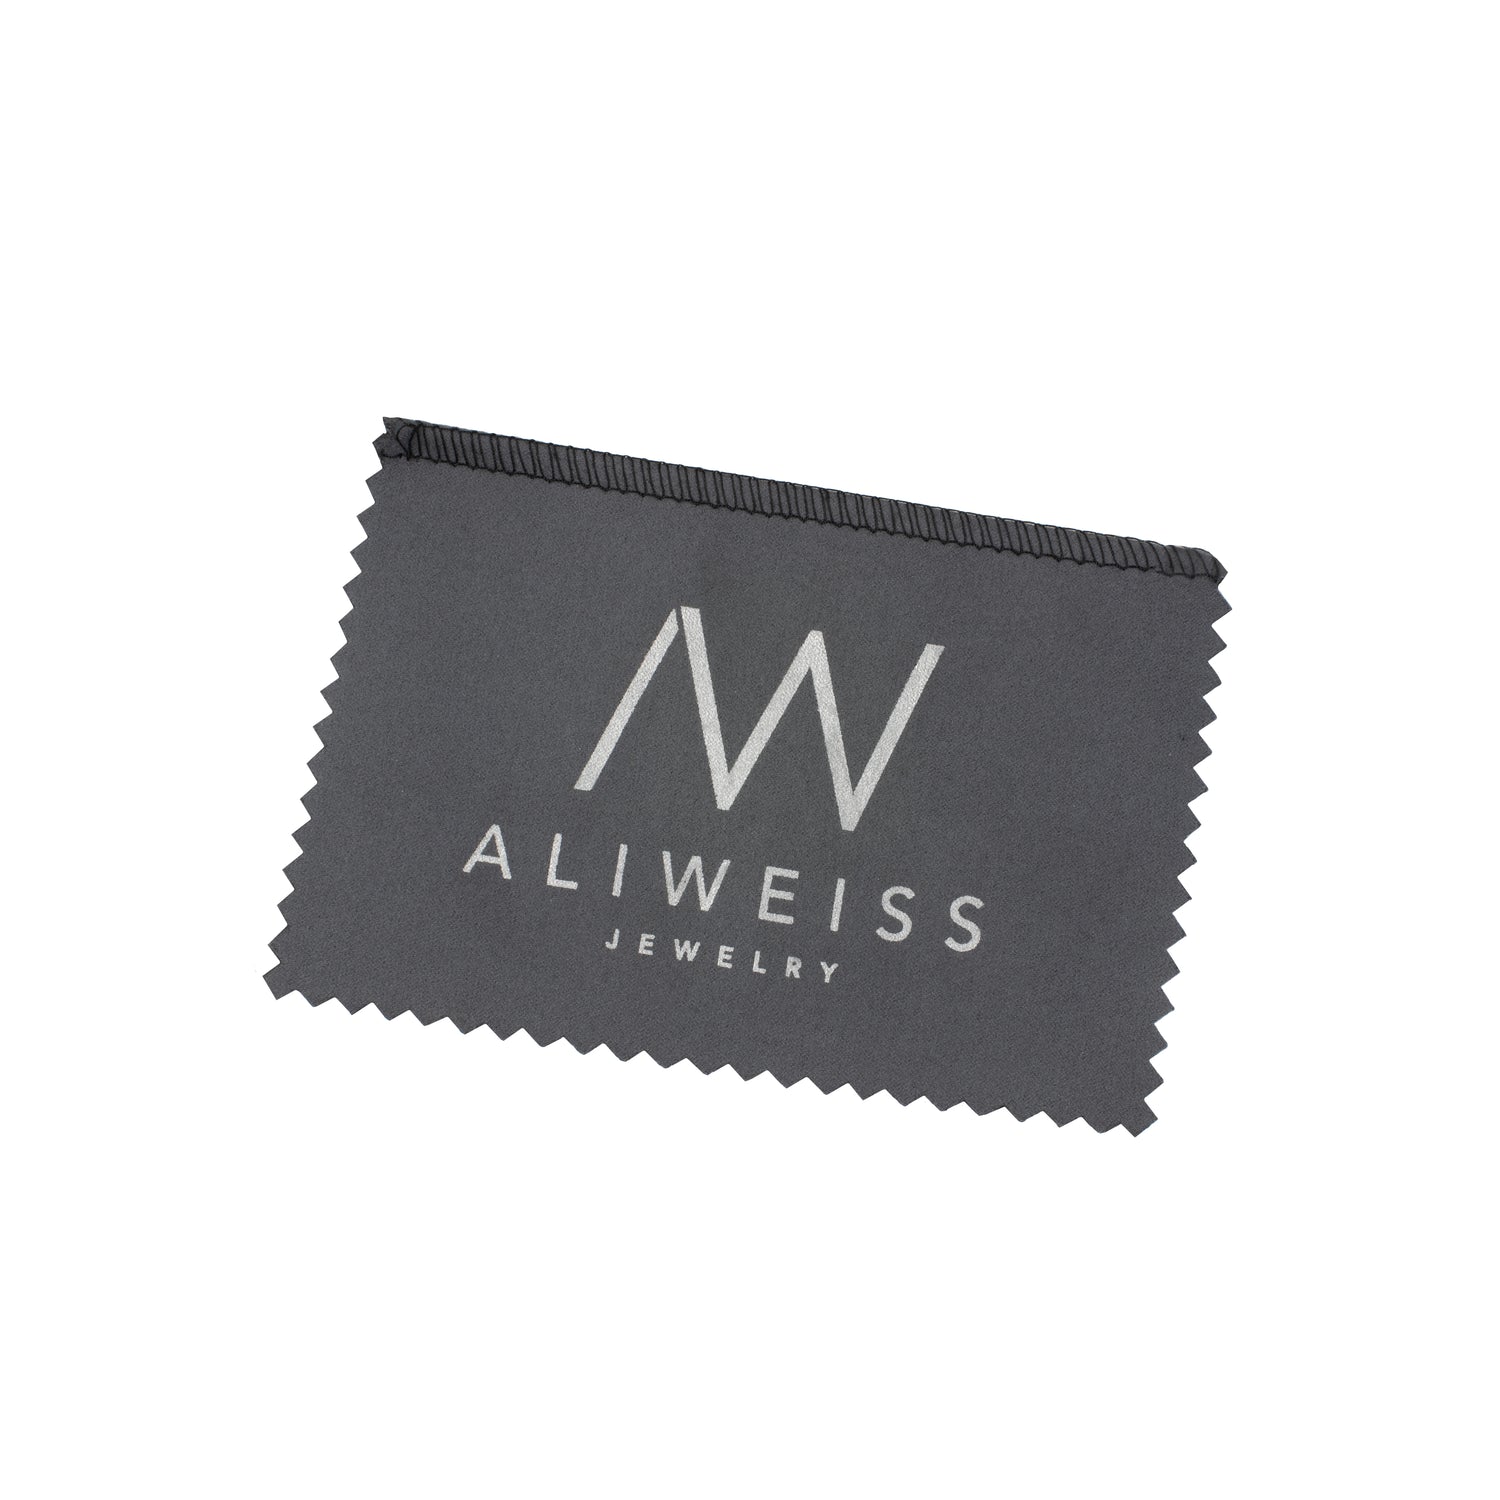 Jewelry Cleaning Kit – Ali Weiss Jewelry